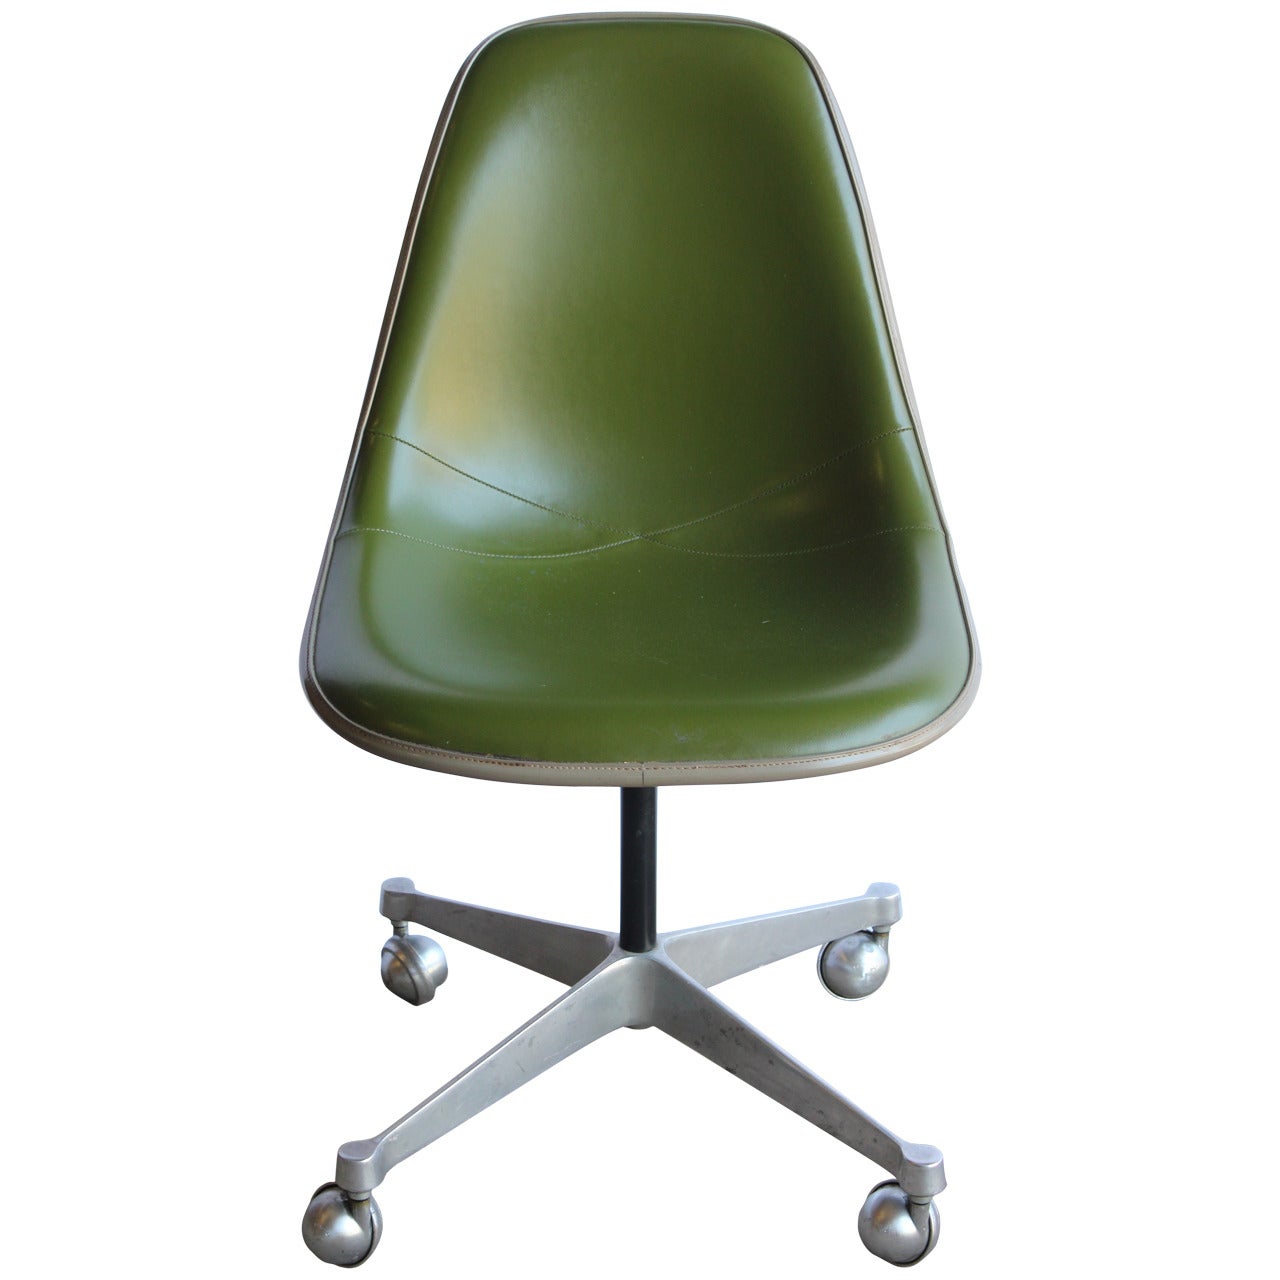 1960s Charles Eames Desk Chair for Herman Miller